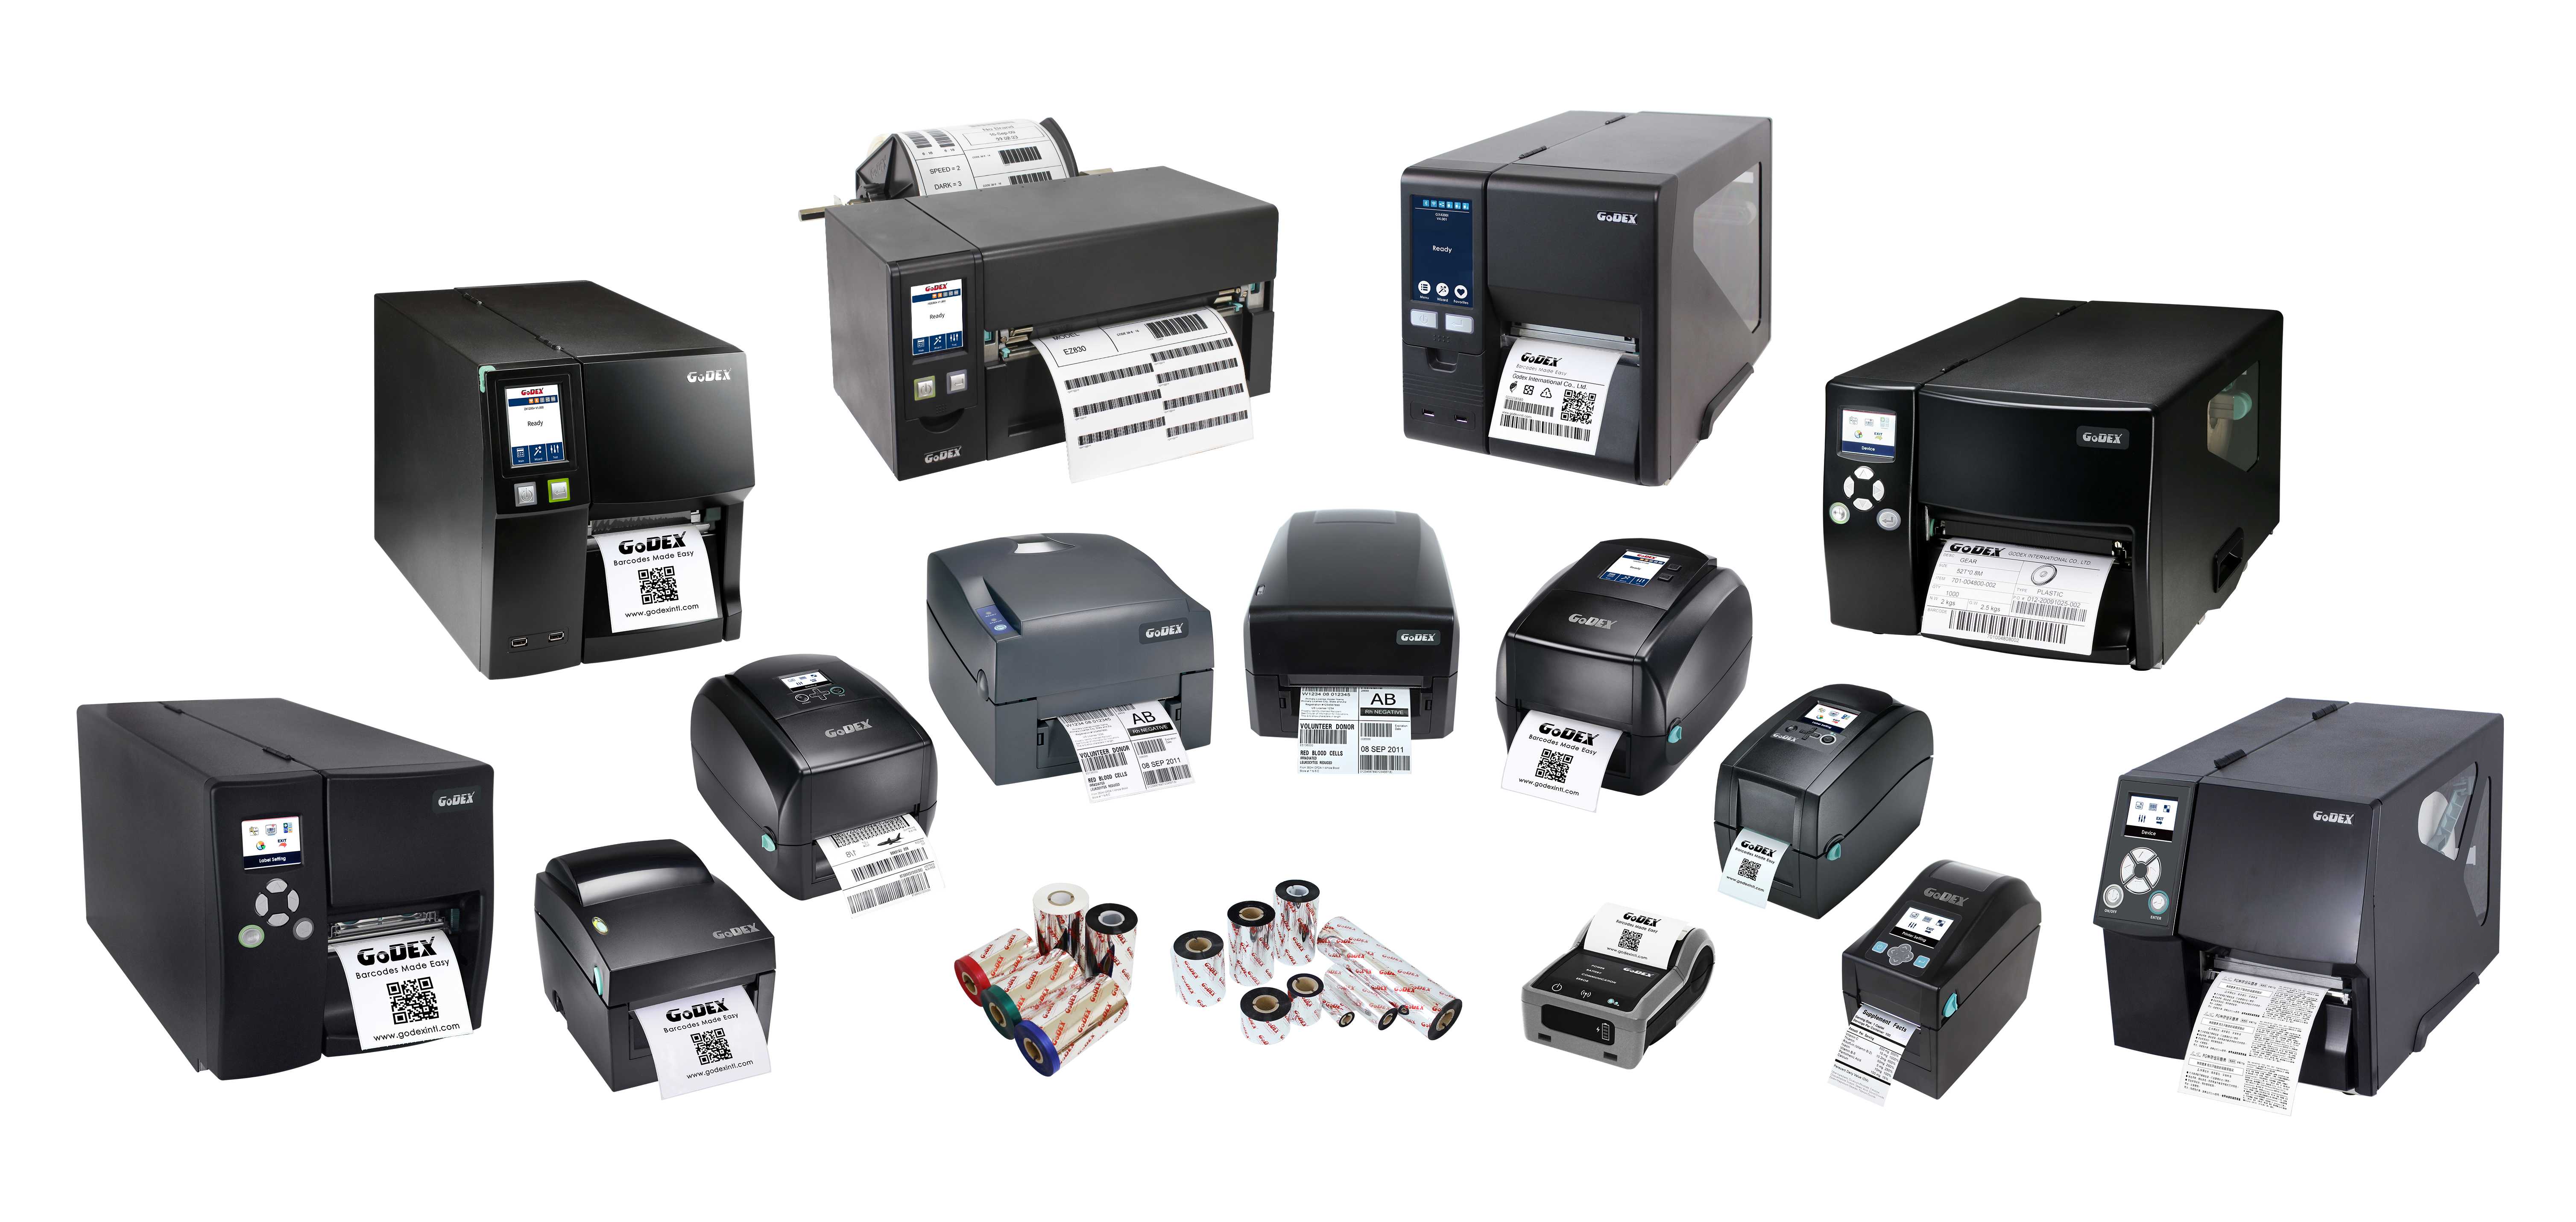 The GoDex printer family ranges.